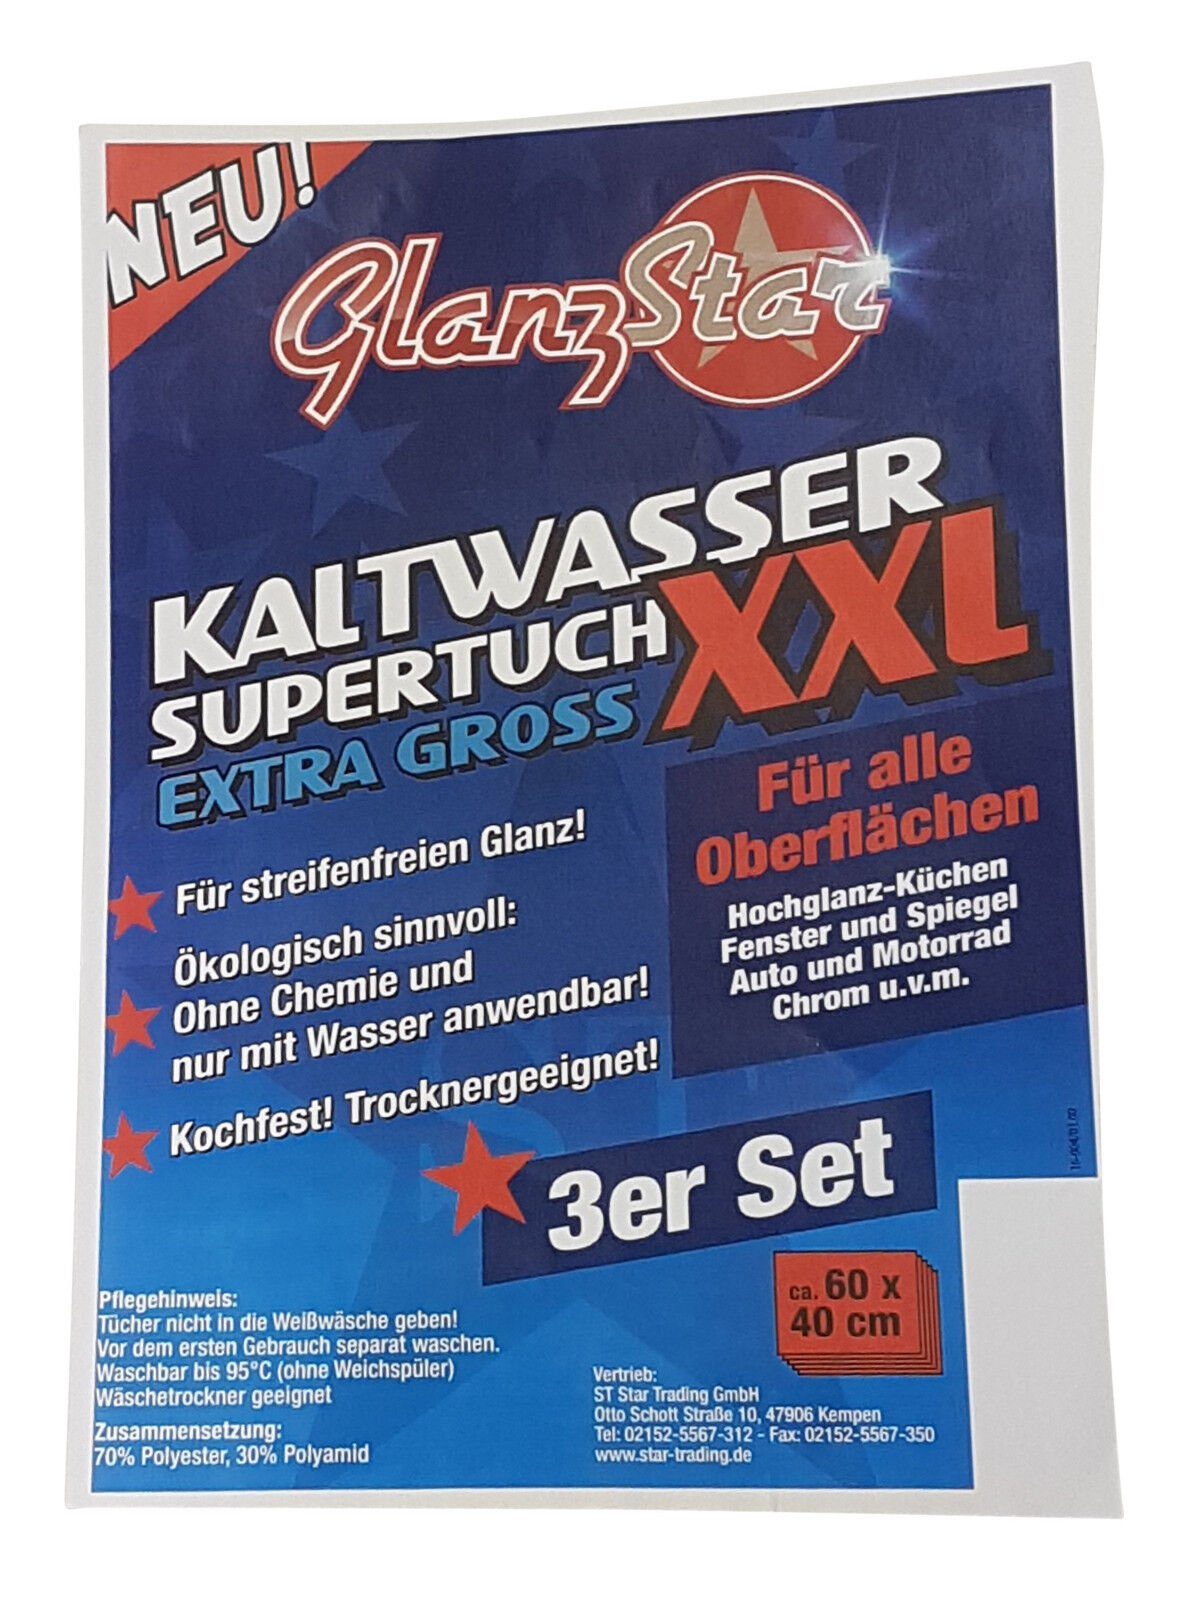 Glanzstar Kaltwasser Supertuch XXL 3er Set Mikrofasertuch (70% Polyester 30% Polyamid)